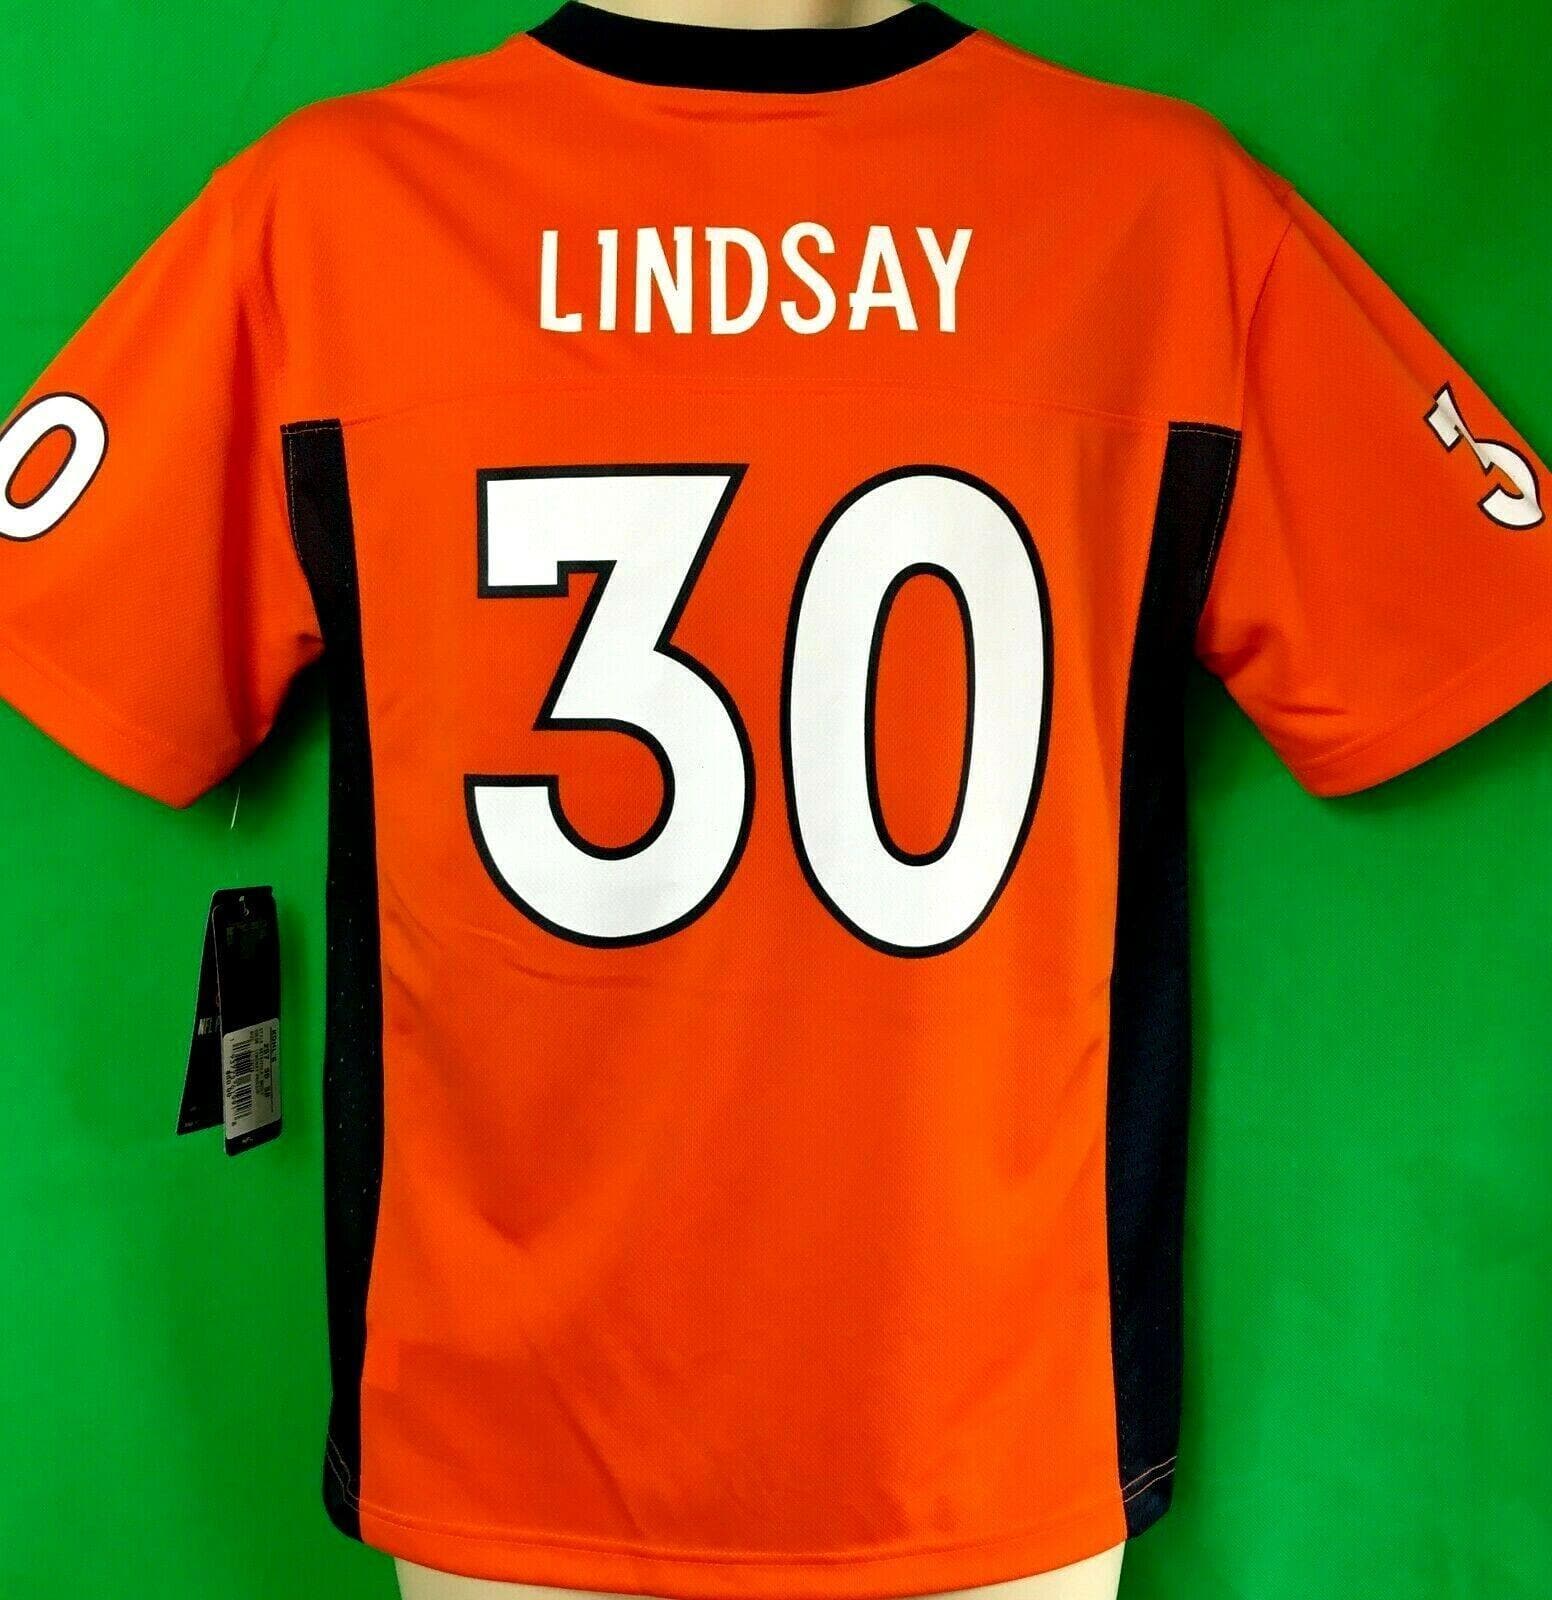 NFL Denver Broncos Phillip Lindsay #30 Jersey Youth Large 14-16 NWT